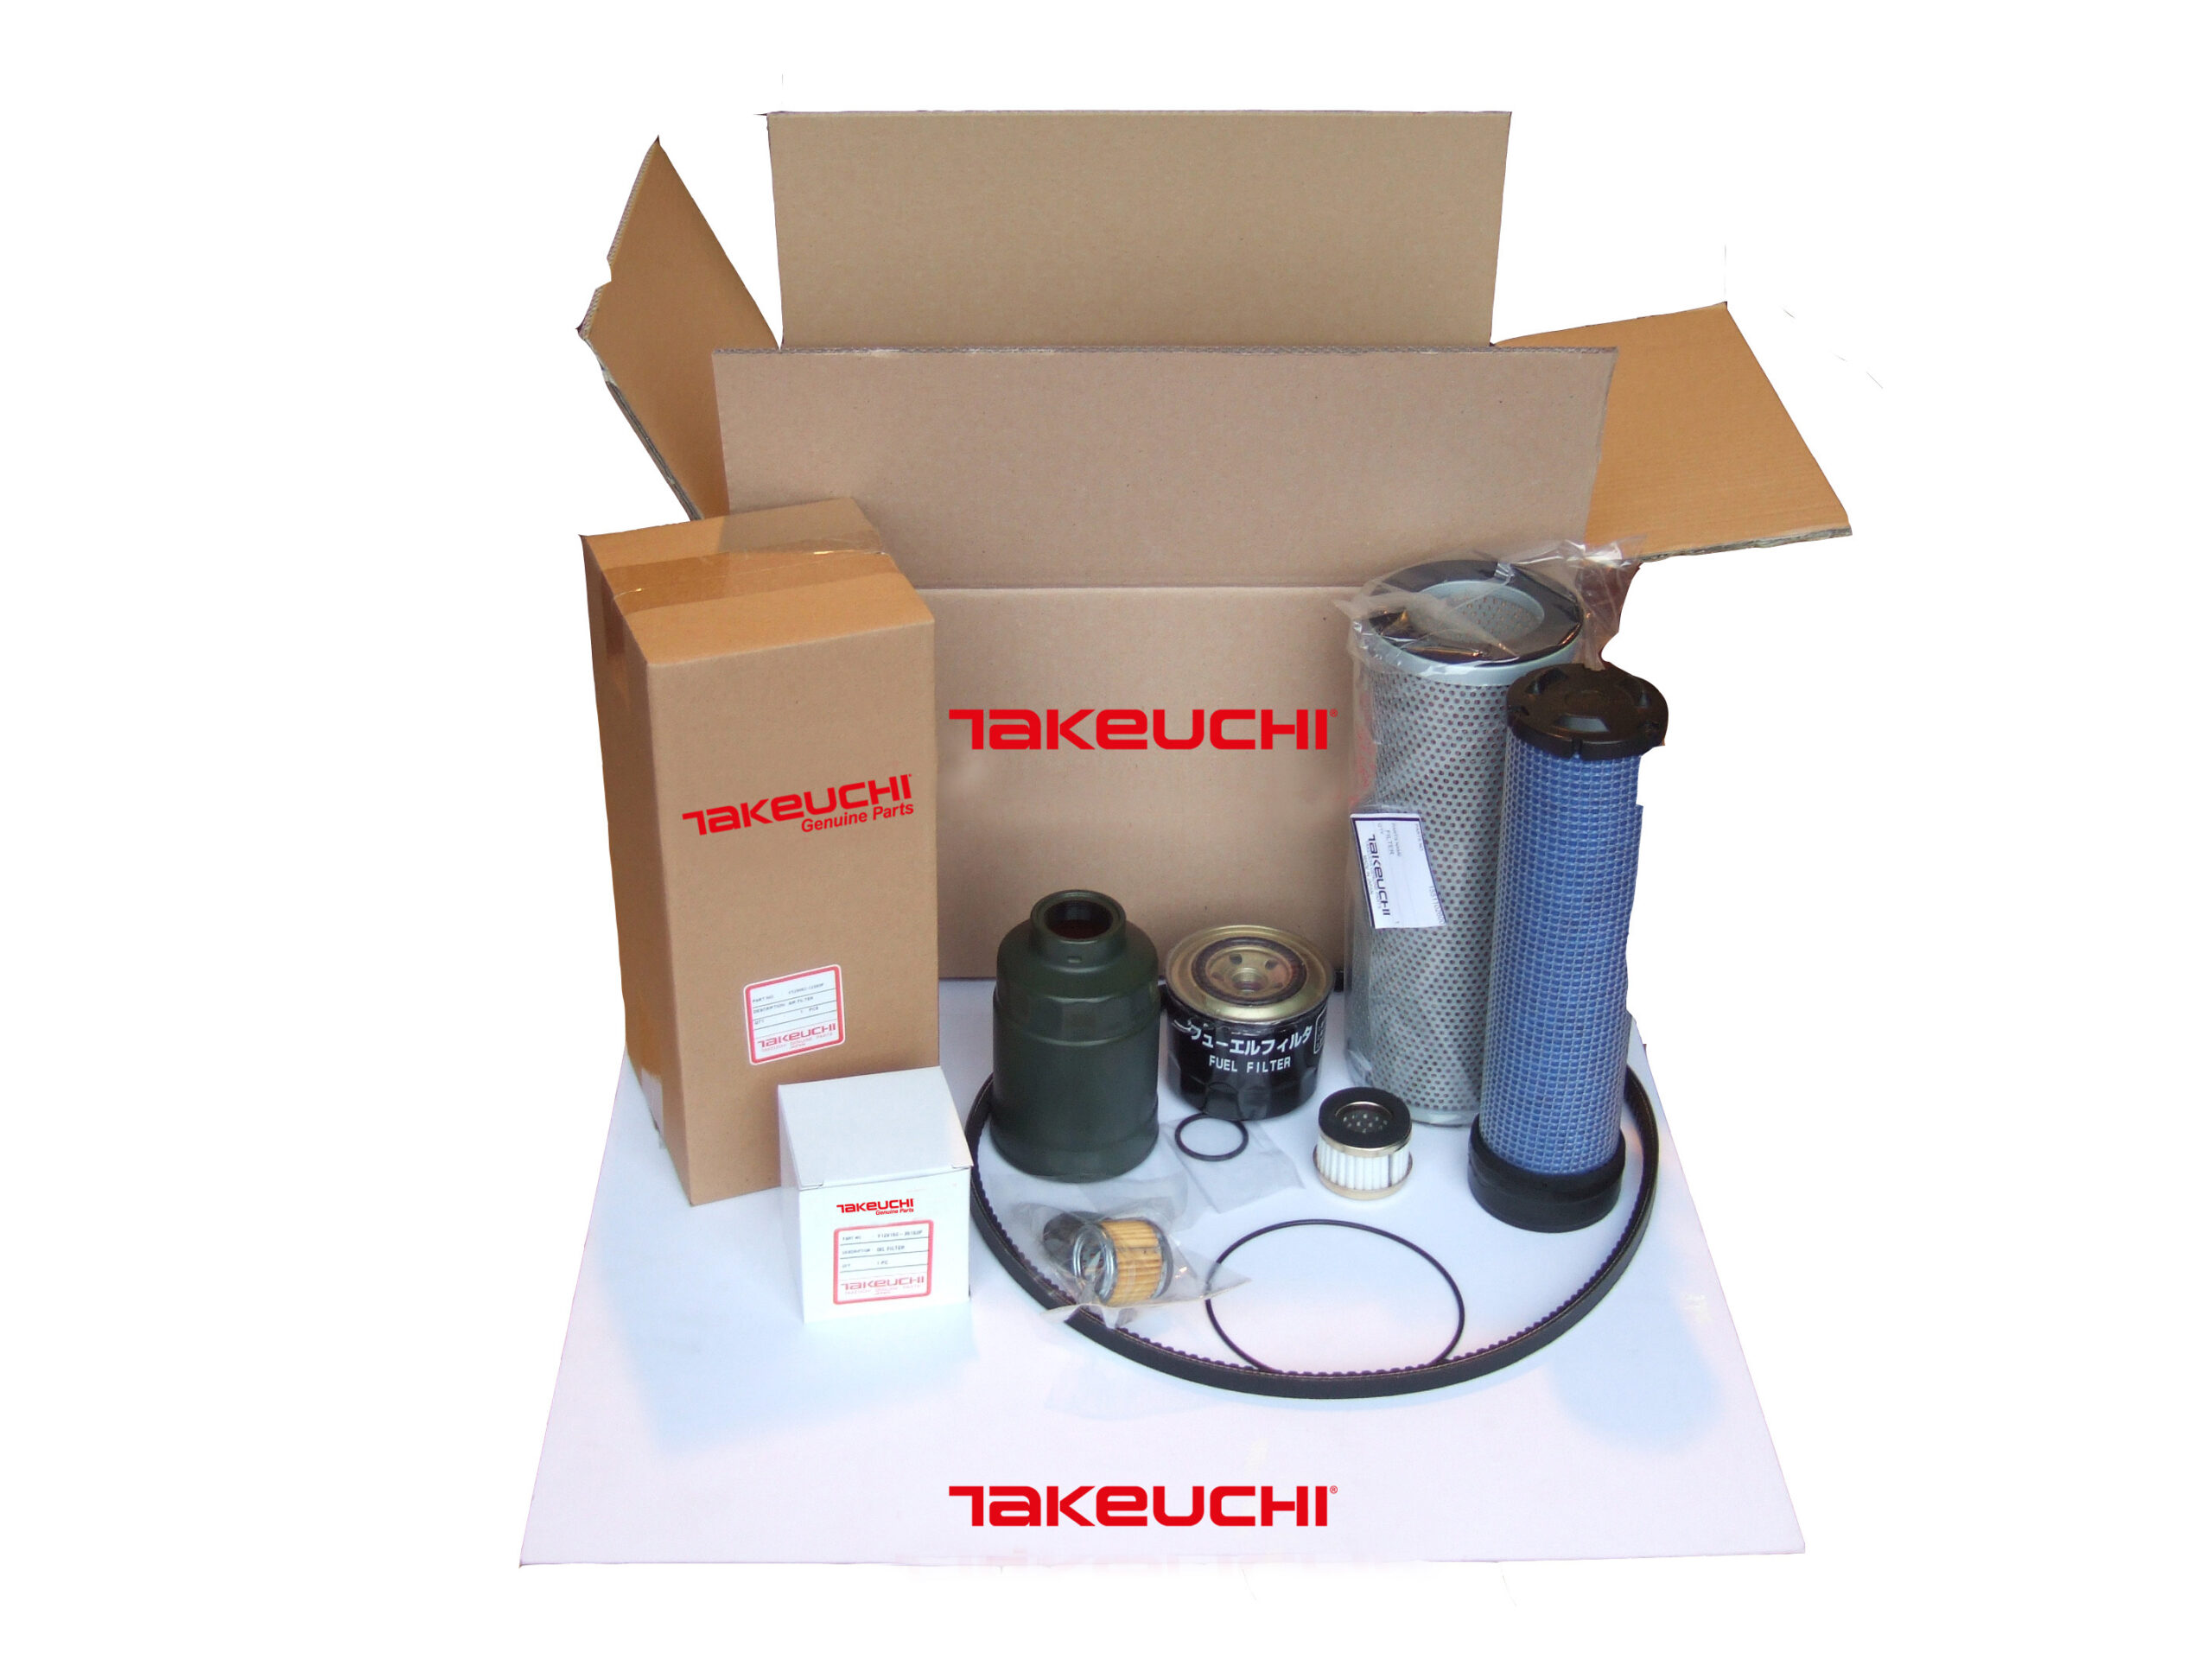 Takeuchi service kit